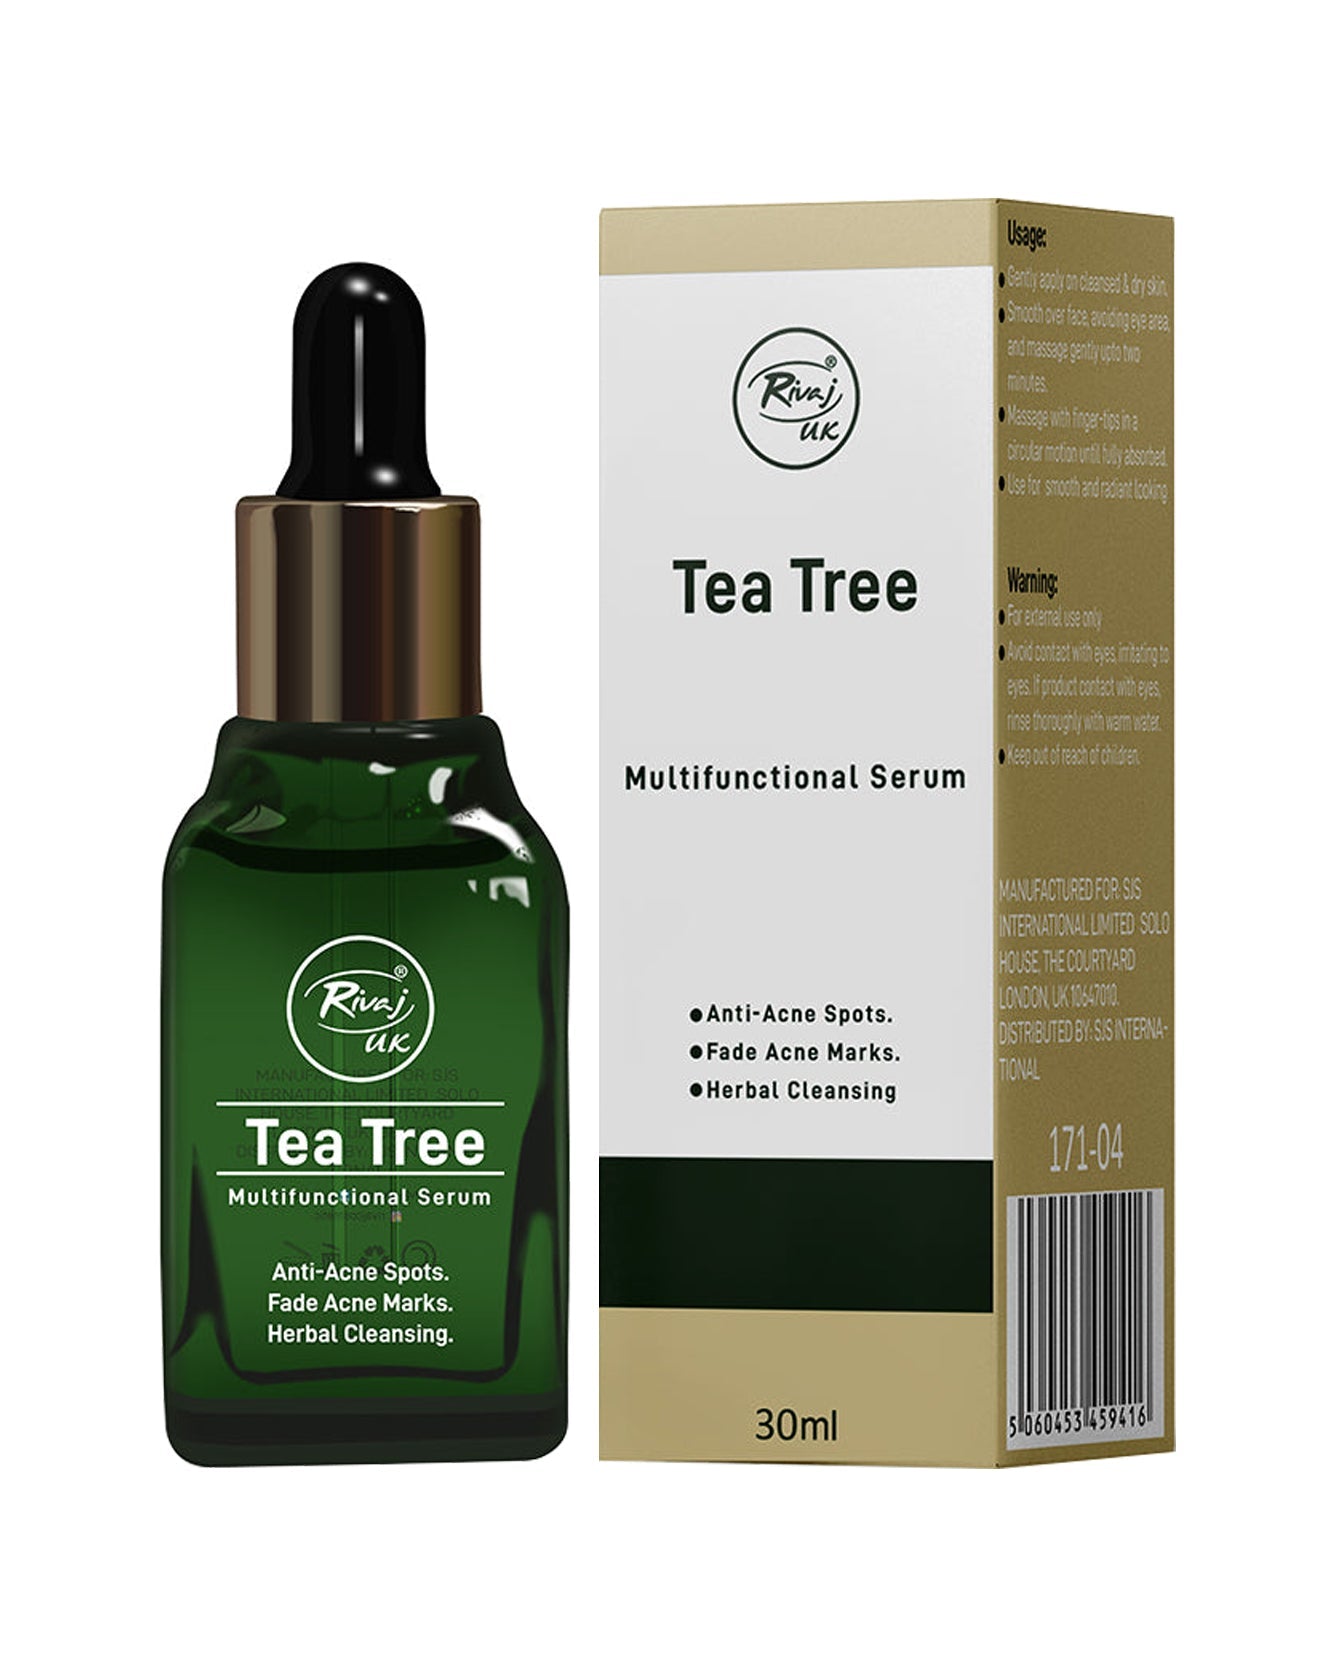 Rivaj UK Face Serum - Tea Tree 30ml